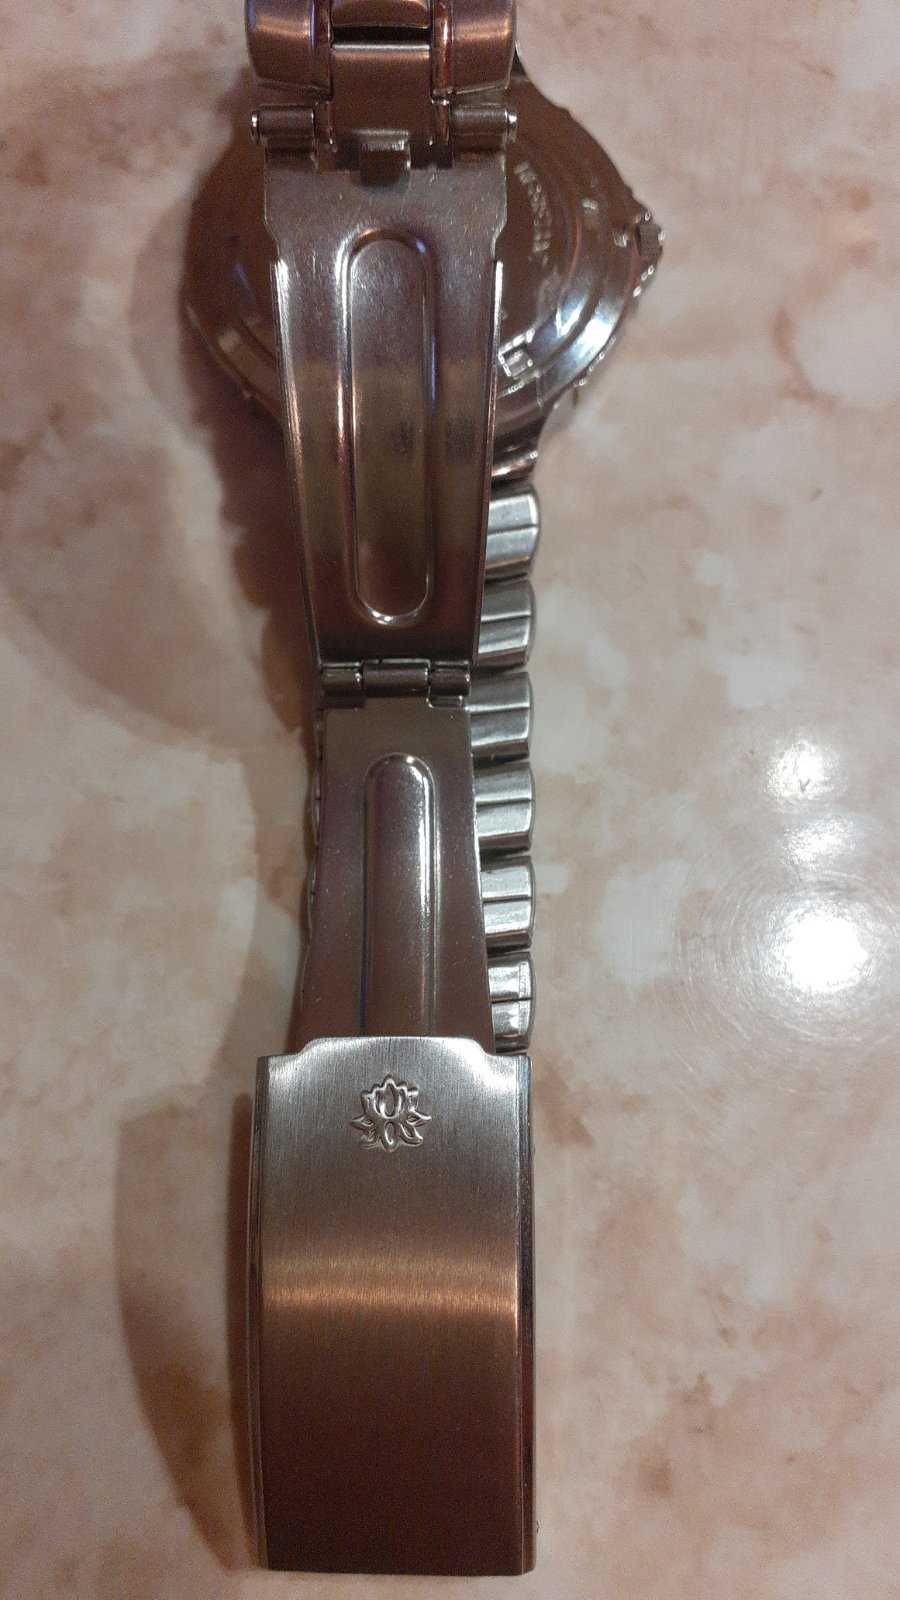 Zegarek ROFINA 6207